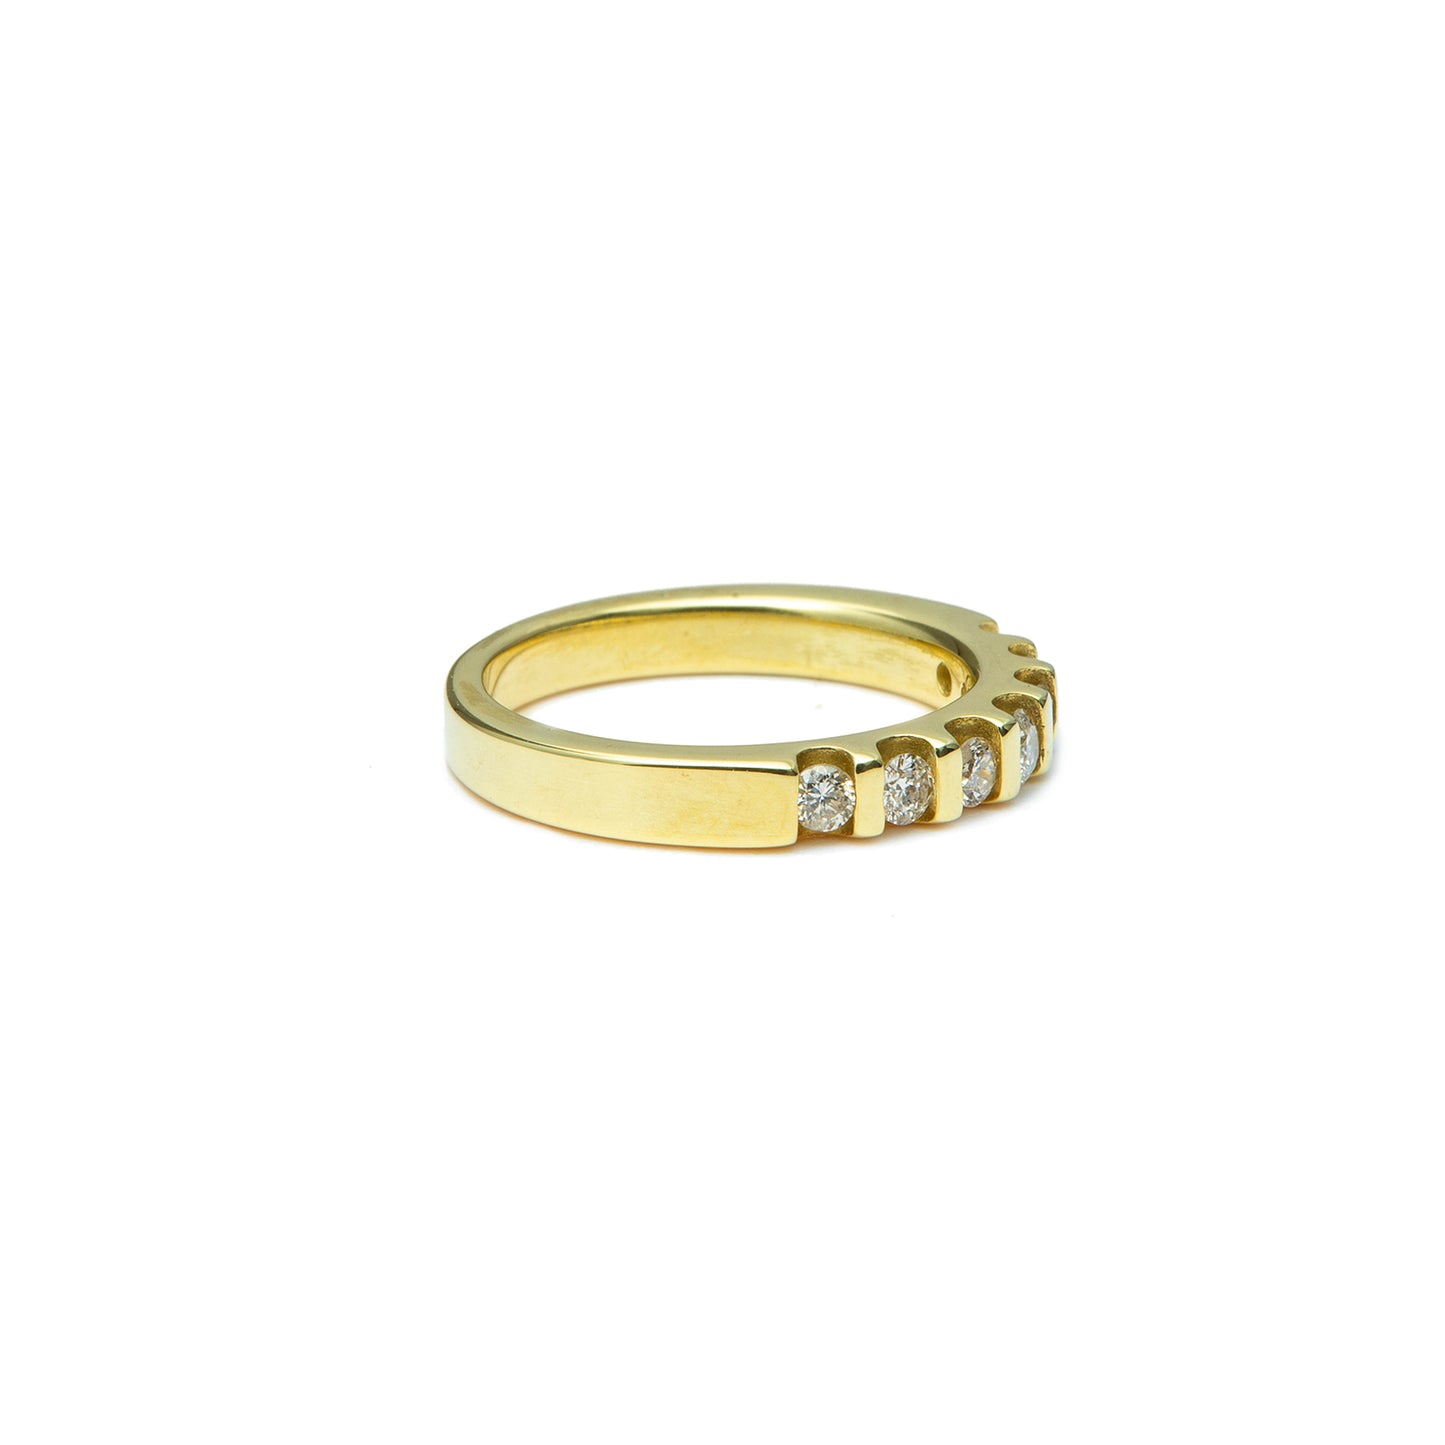 Half memory diamond ring yellow gold 14K 585 women's jewelry women's ring gold ring 